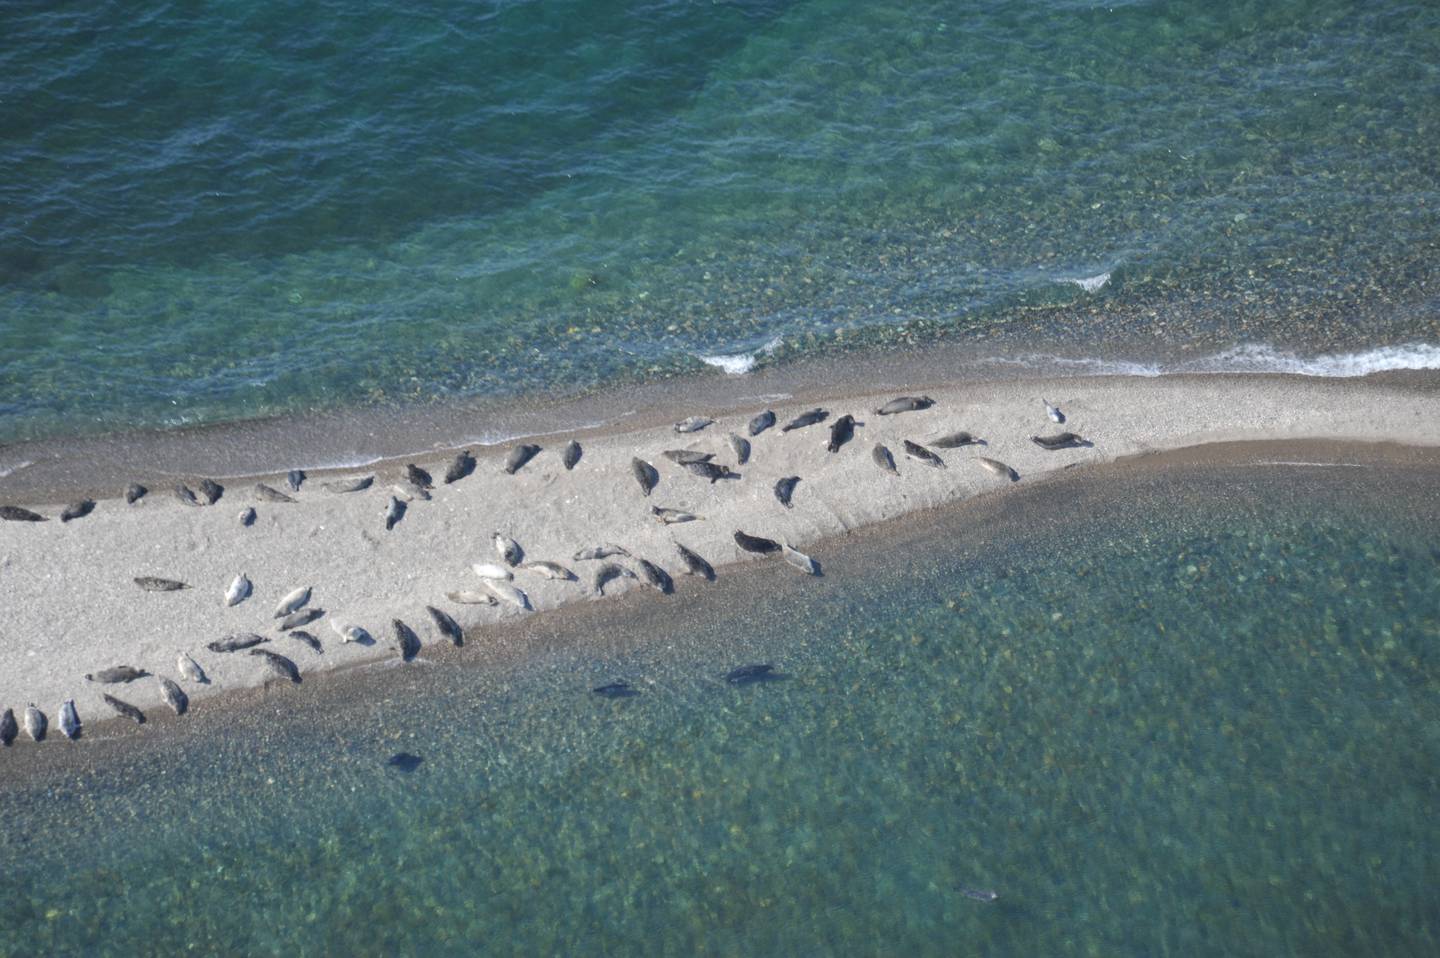 Pacific Harbor Seals in Lake Iliamna